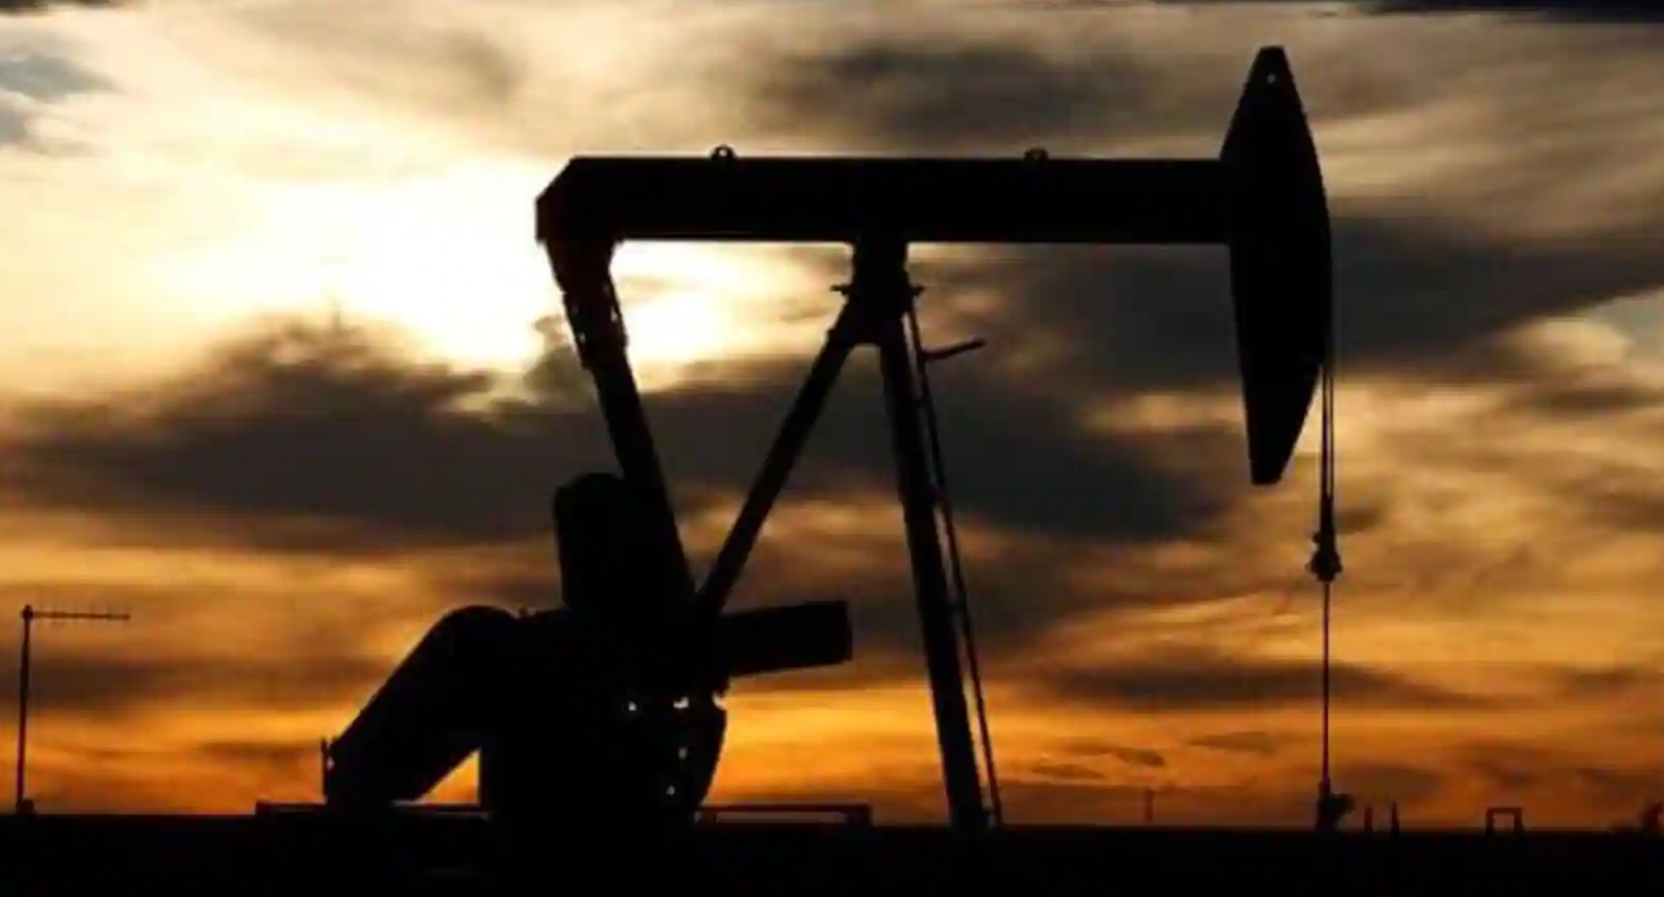 Cijene nafte na svjetskom tržištu porasle su u petak zbog slabe ponude, jer investitori prate moguće smanjenje proizvodnje iz Rusije